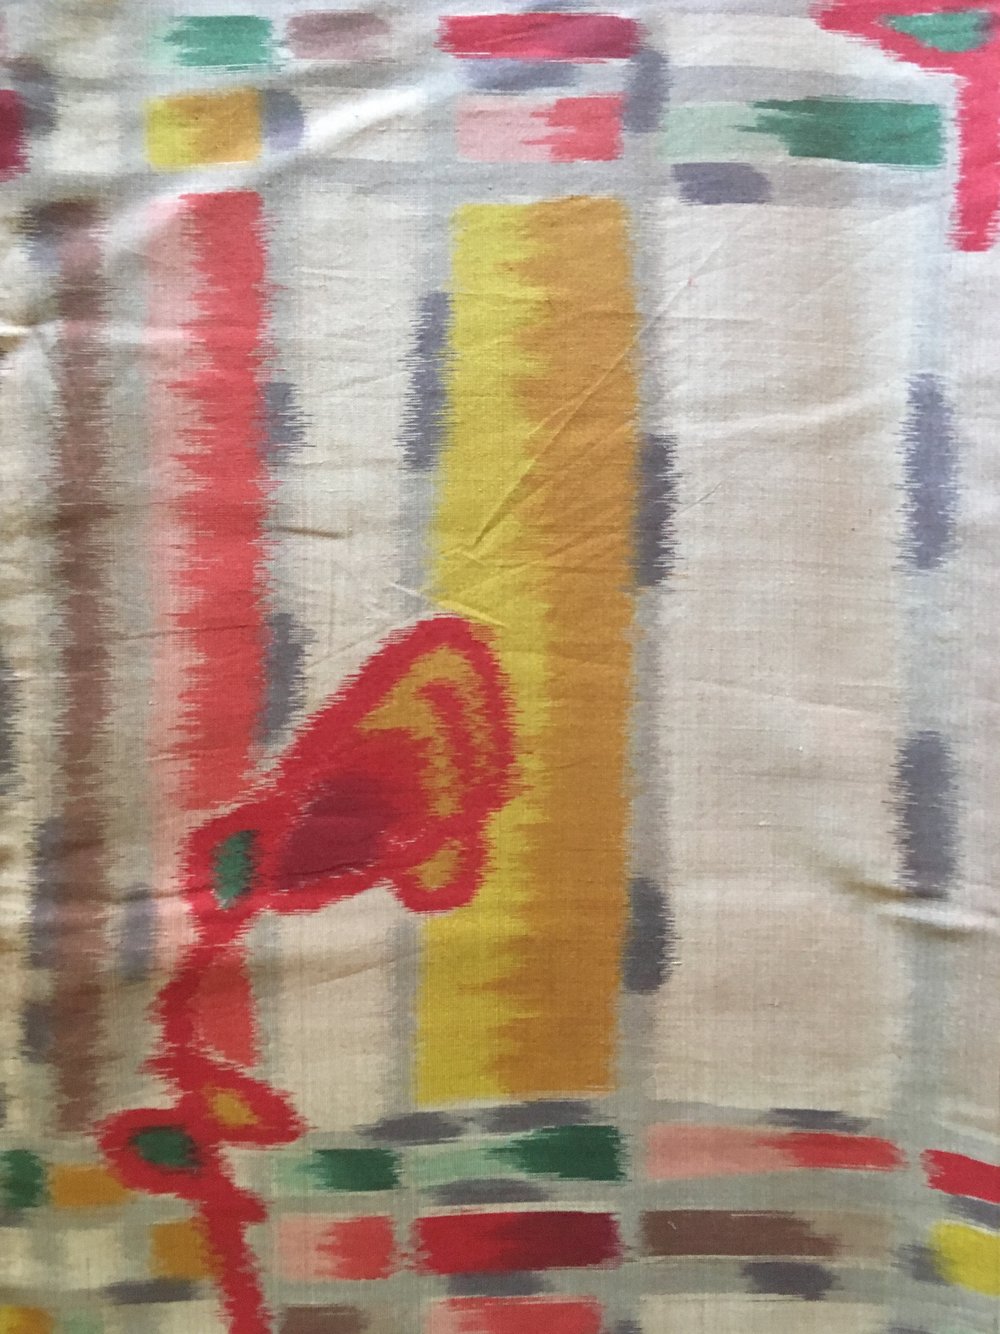  Meisen fabric from Chichibu 